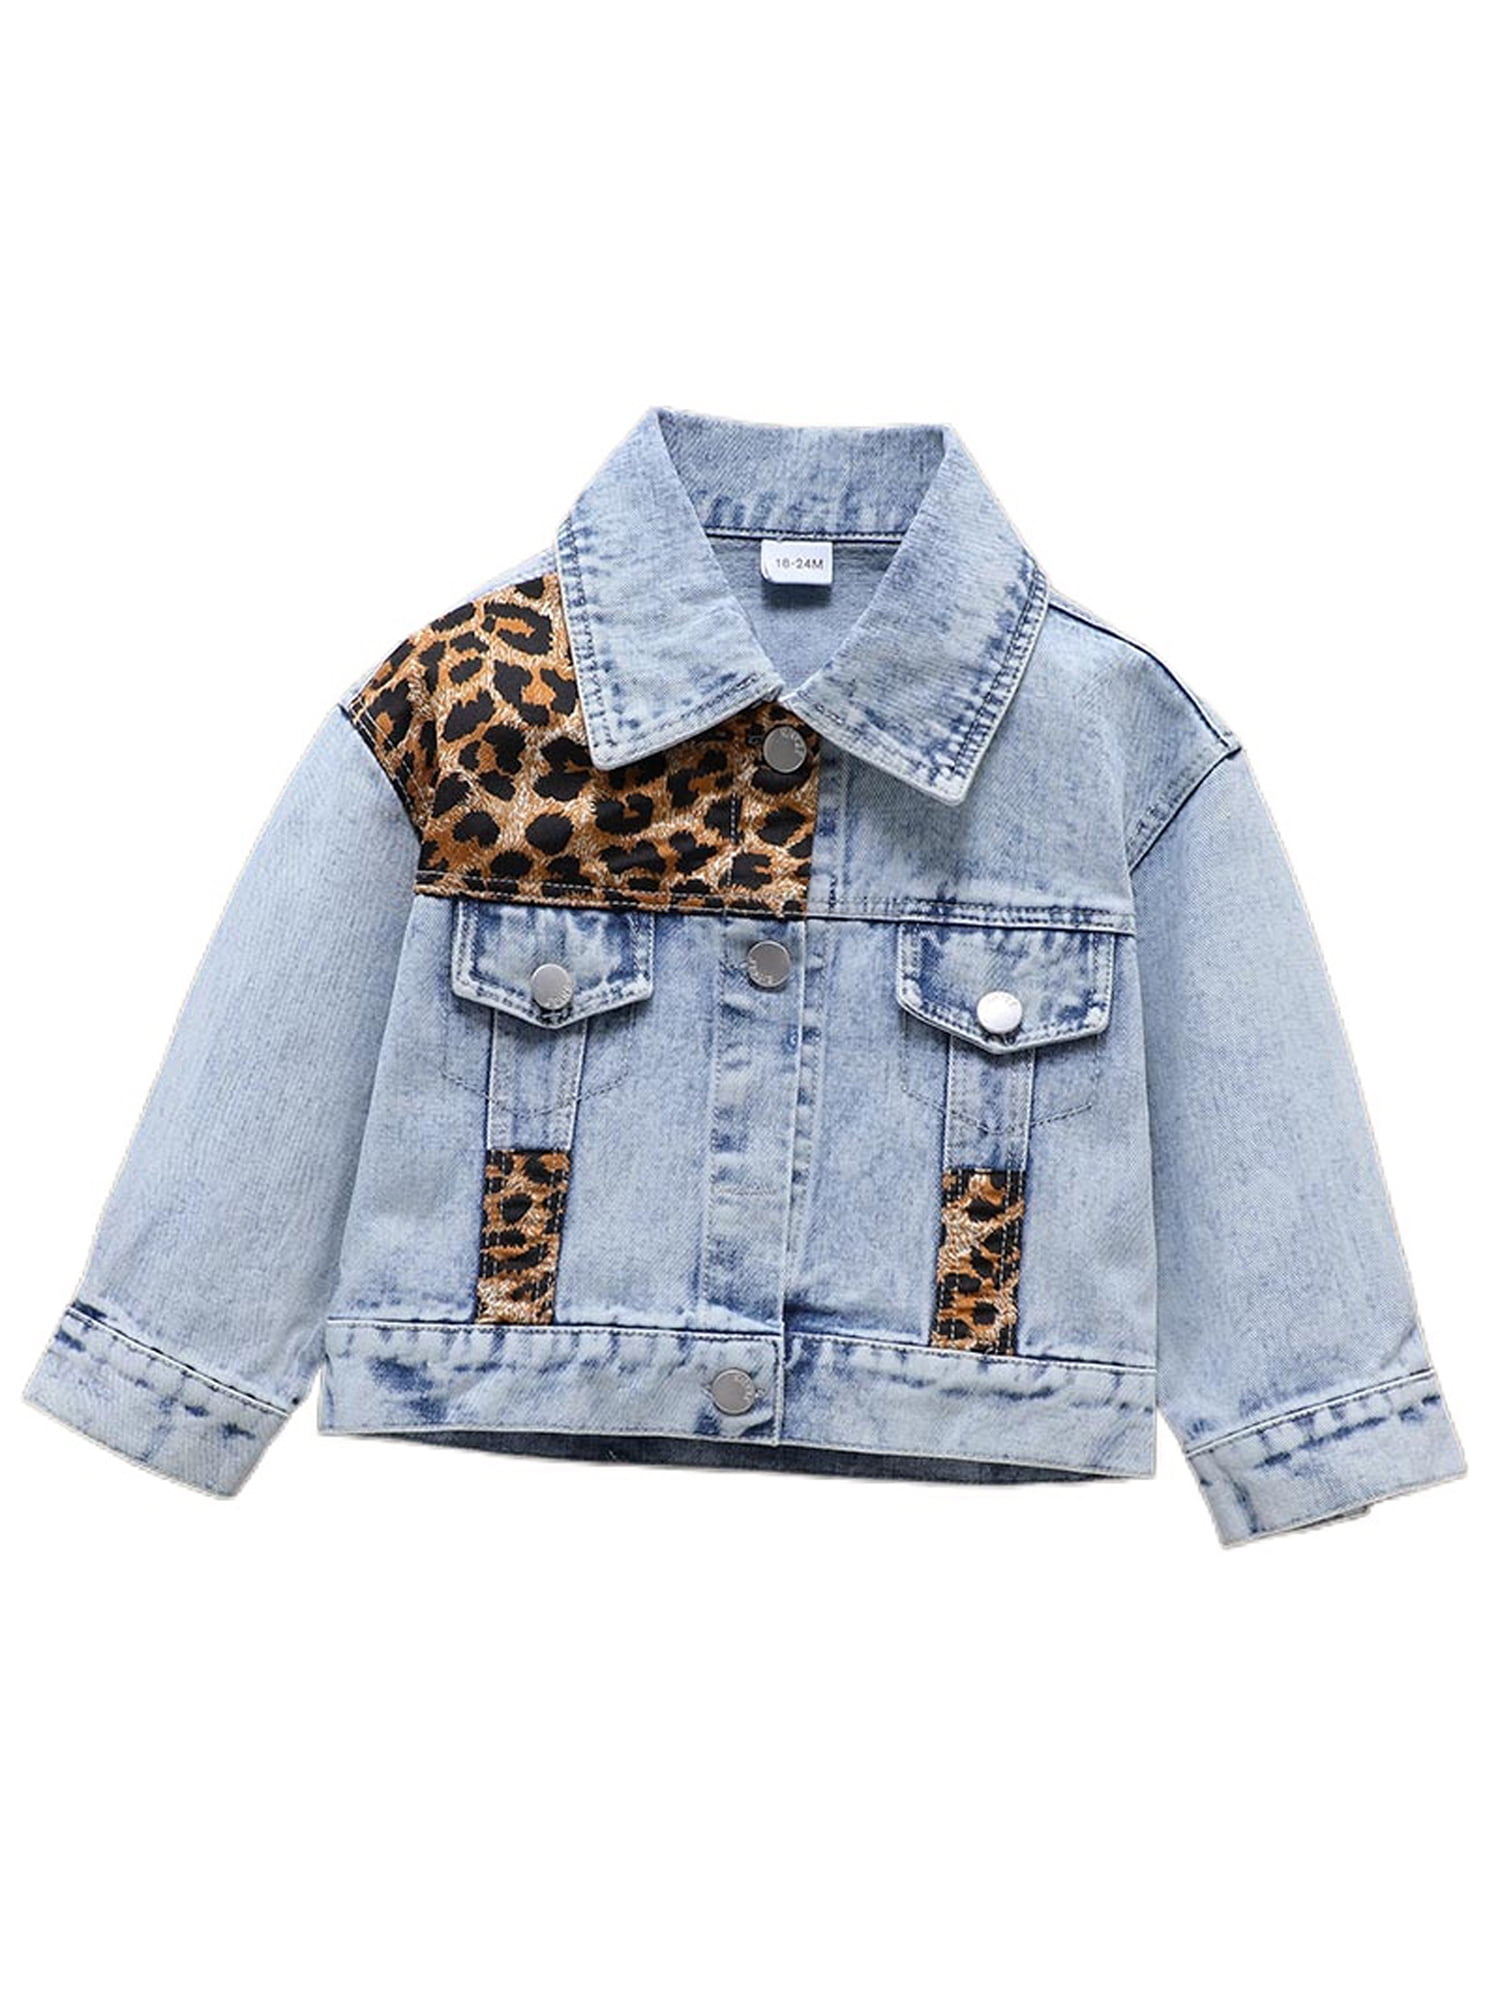 Toddler Baby Girls Denim Jackets Leopard Print Button Down Coats Outwear 